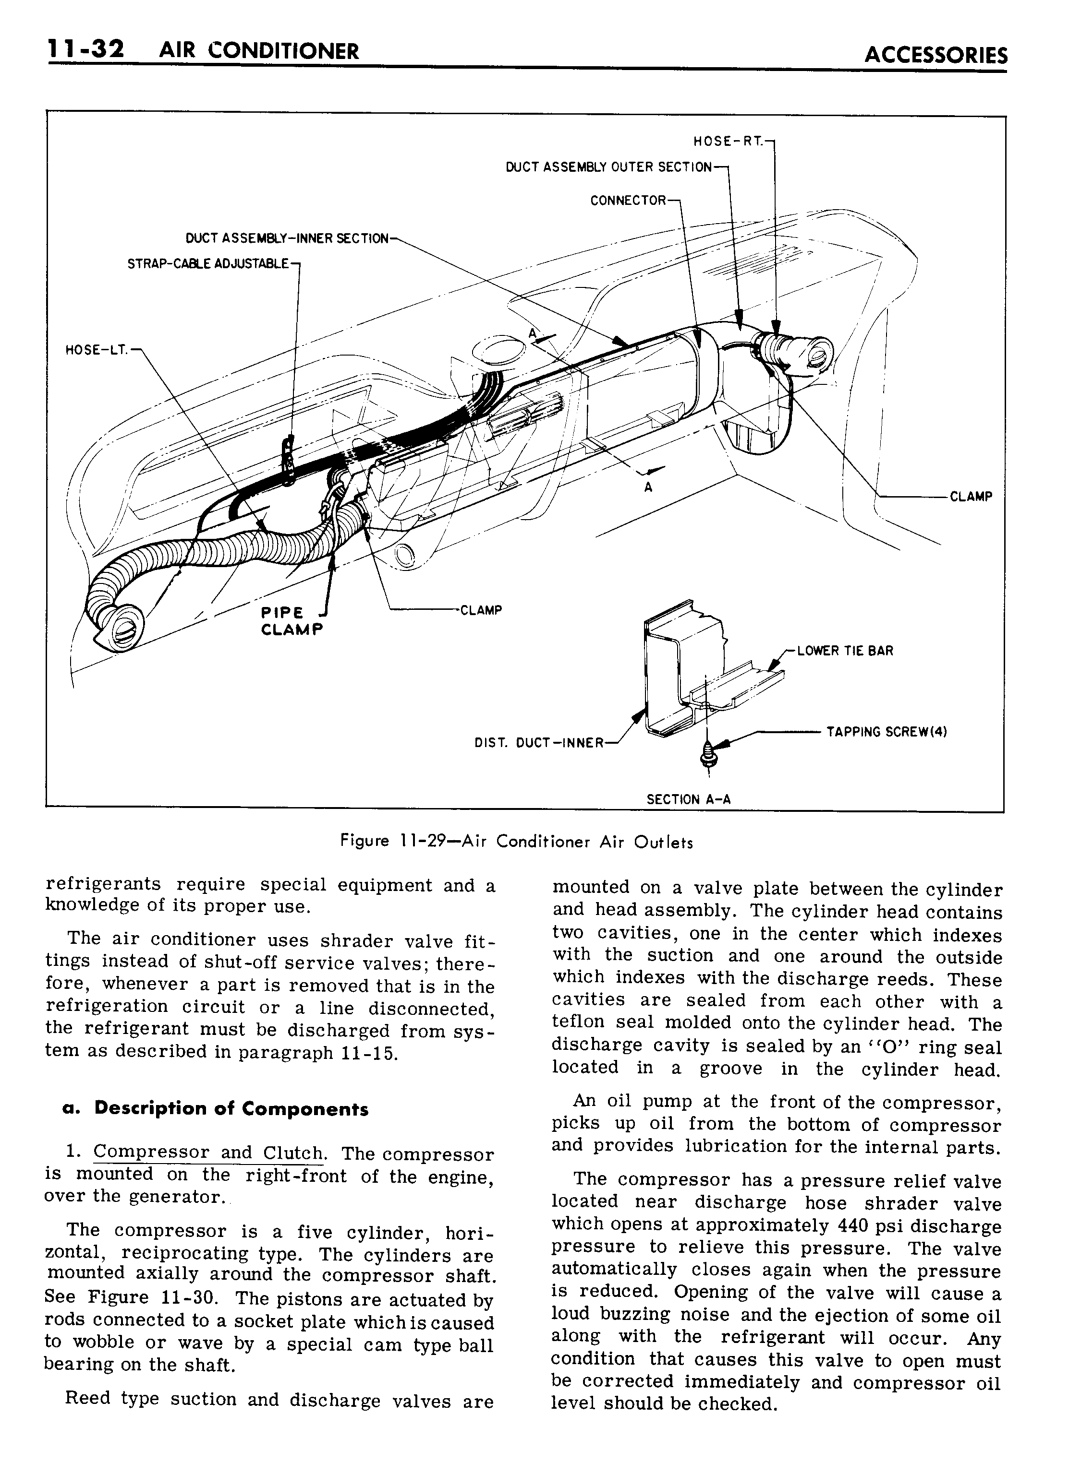 n_11 1961 Buick Shop Manual - Accessories-032-032.jpg